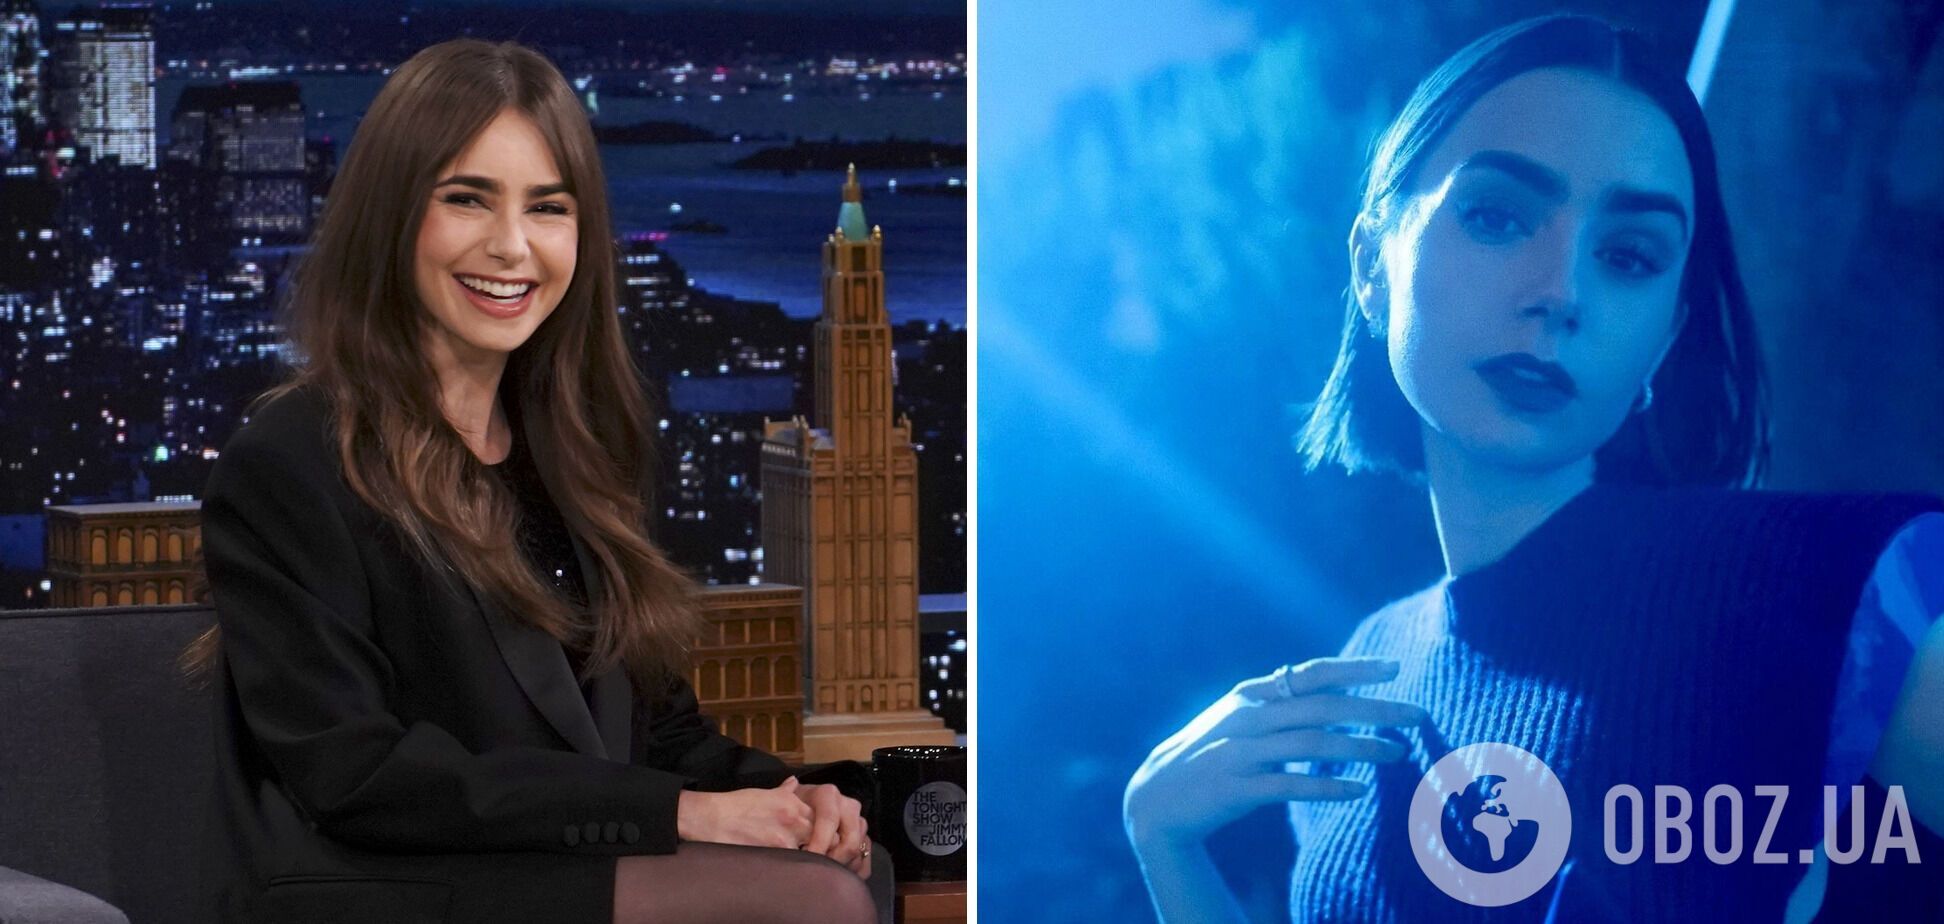 Звезда сериала "Эмили в Париже" Лили Коллинз сменила длинные пряди на элегантный боб. Фото до и после